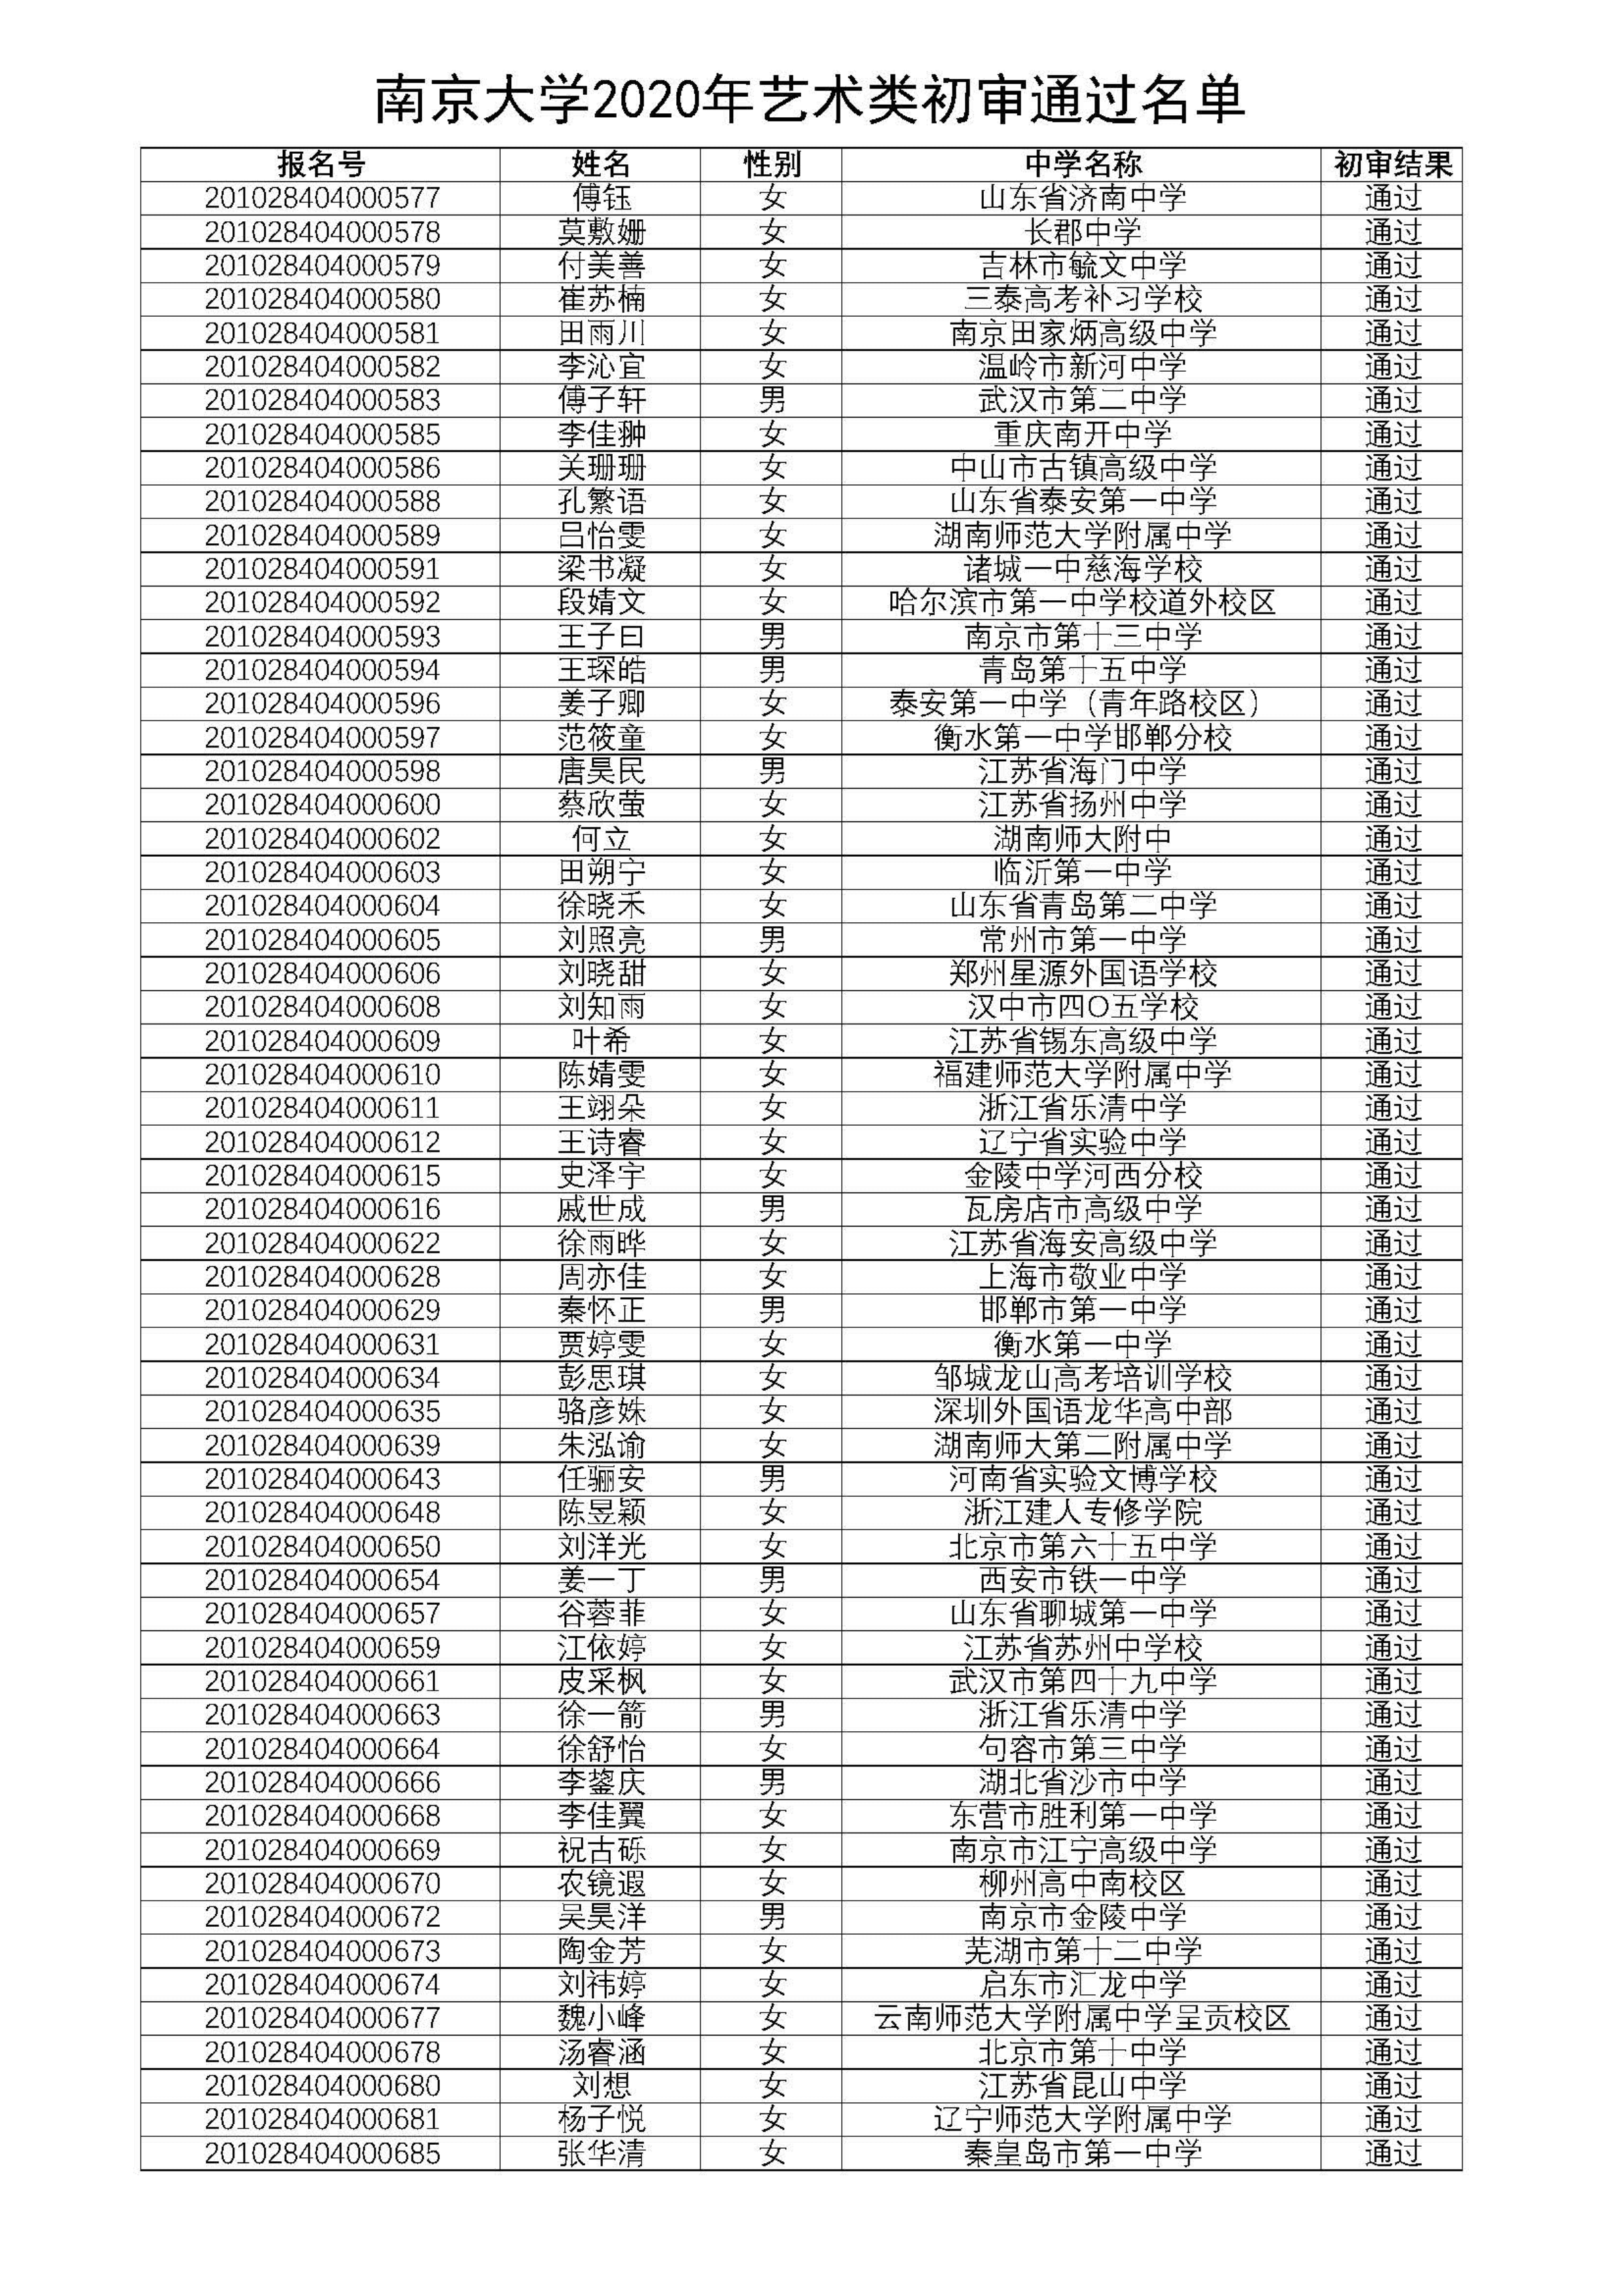 南京大学2020年艺术类初审通过名单_6.png